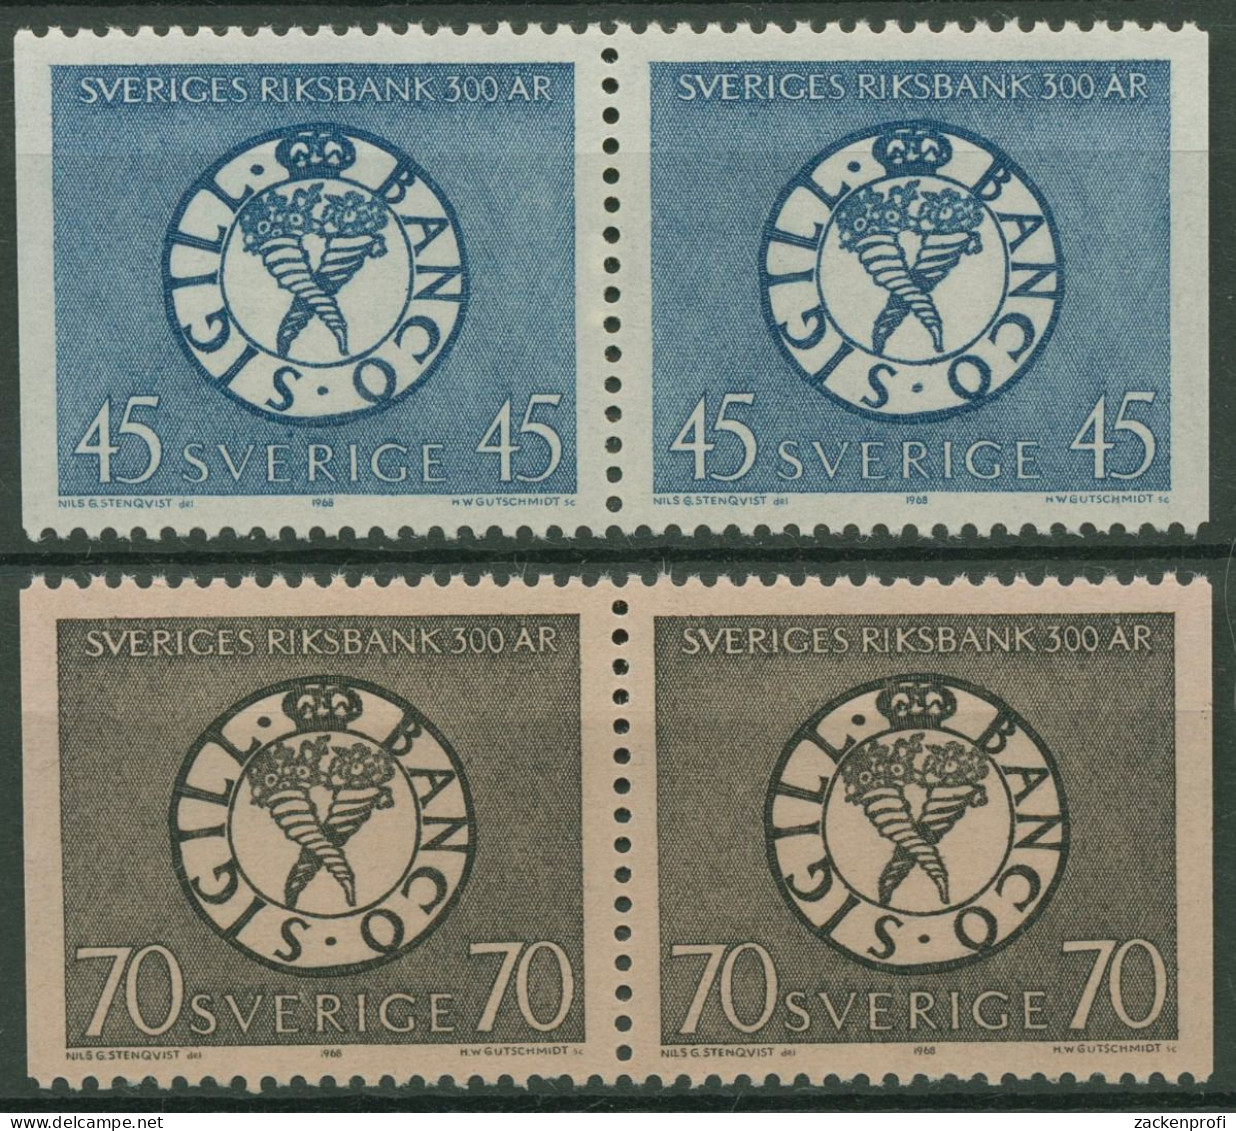 Schweden 1968 Schwedische Reichsbank Siegel 603/04 Dl/Dr Paare Postfrisch - Unused Stamps